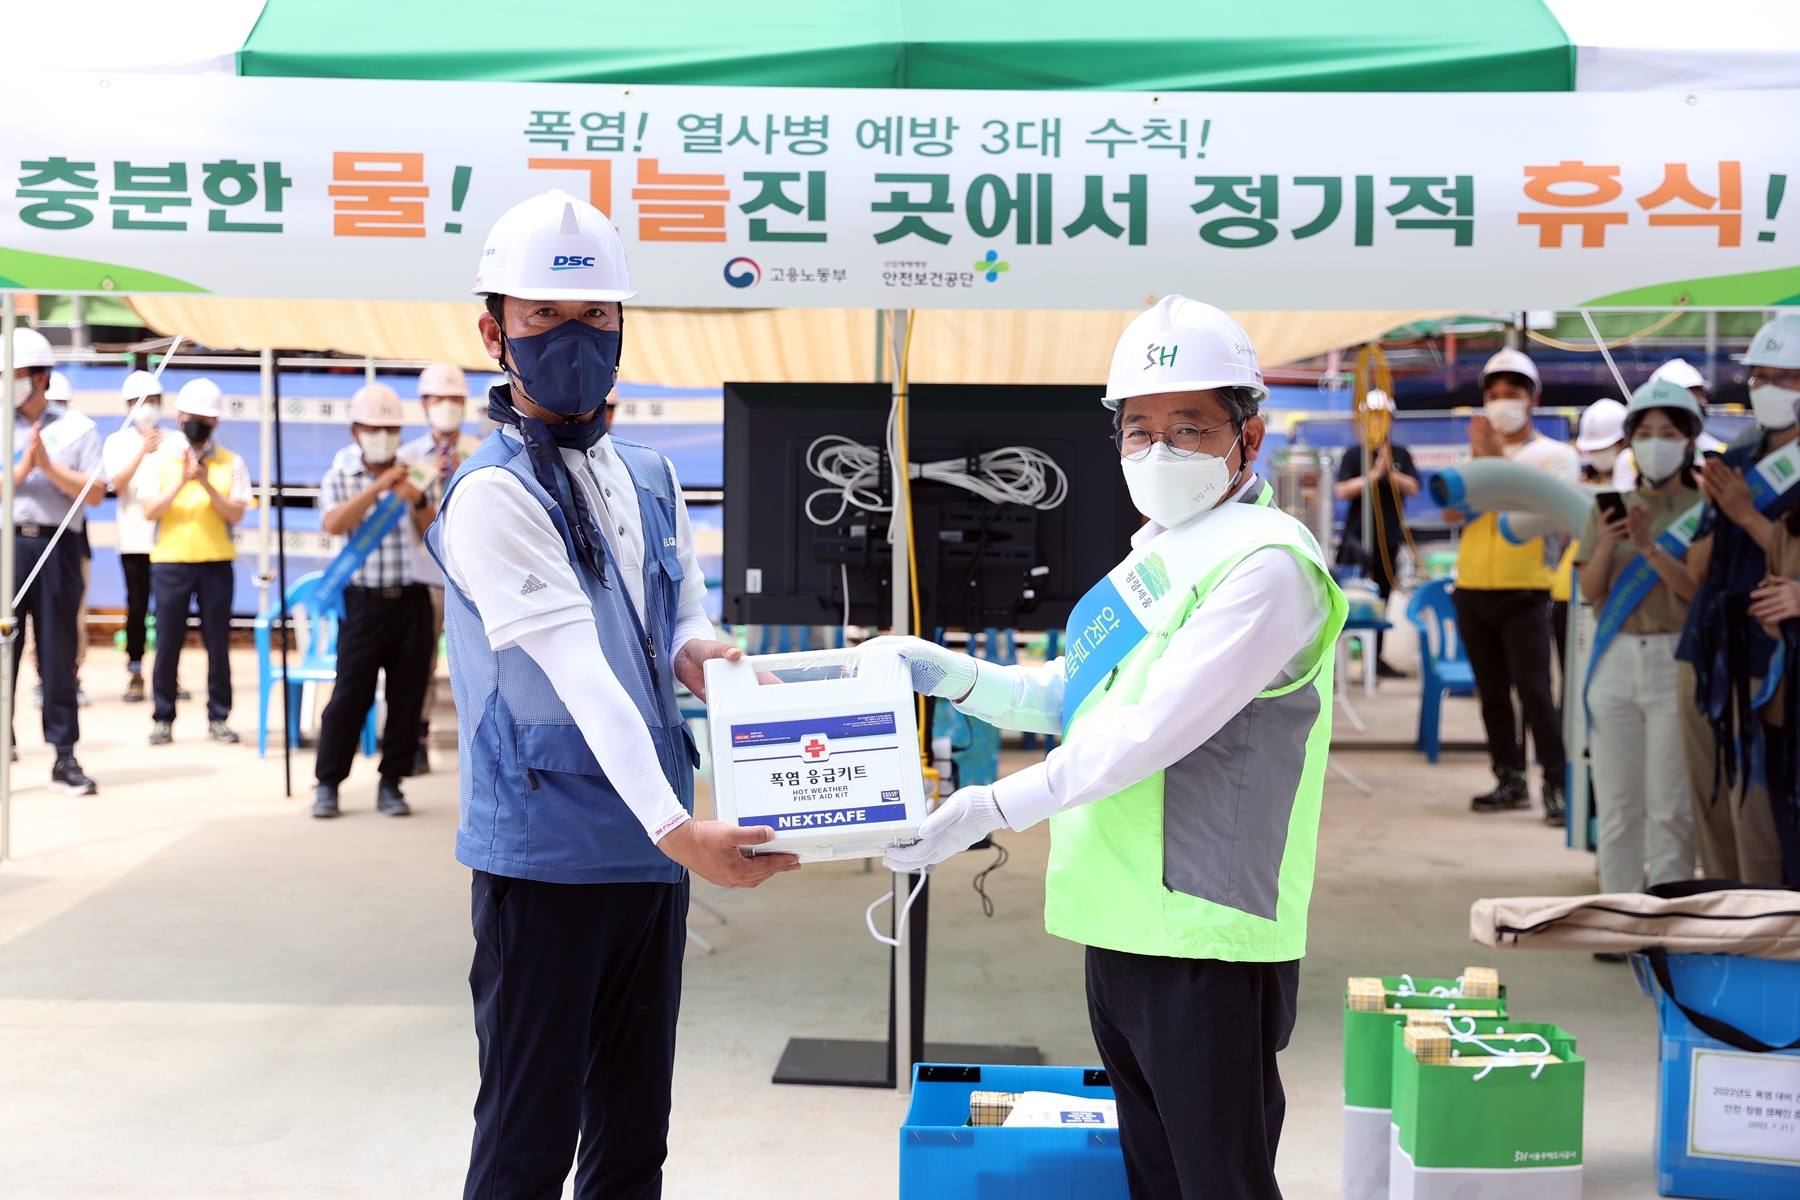 김헌동 SH공사 사장(오른쪽)이 야외근로자들의 안전을 위해 폭염 응급키트를 전달하고 있다. /사진제공=SH공사